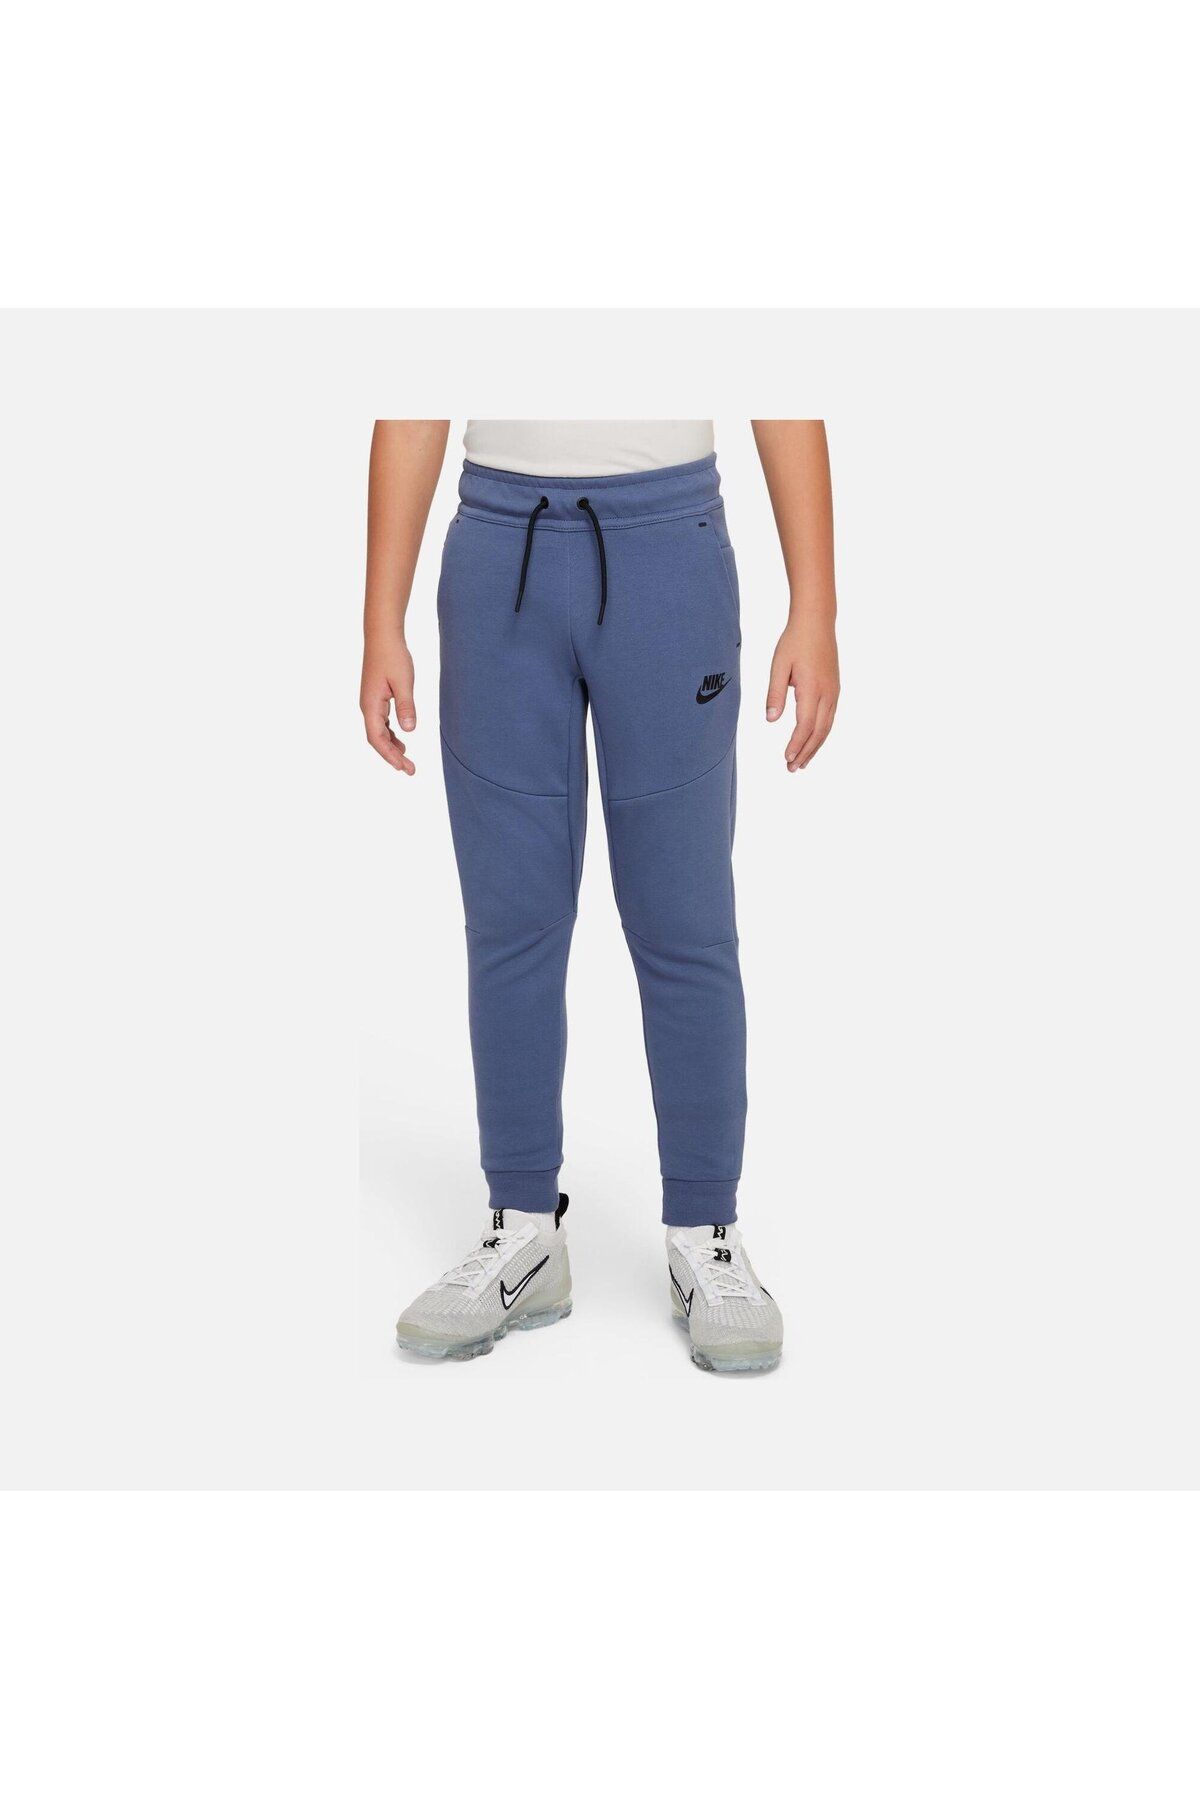 Nike Sportswear Tech Fleece Trousers (Boys') Çocuk Eşofman Altı CU9213-491